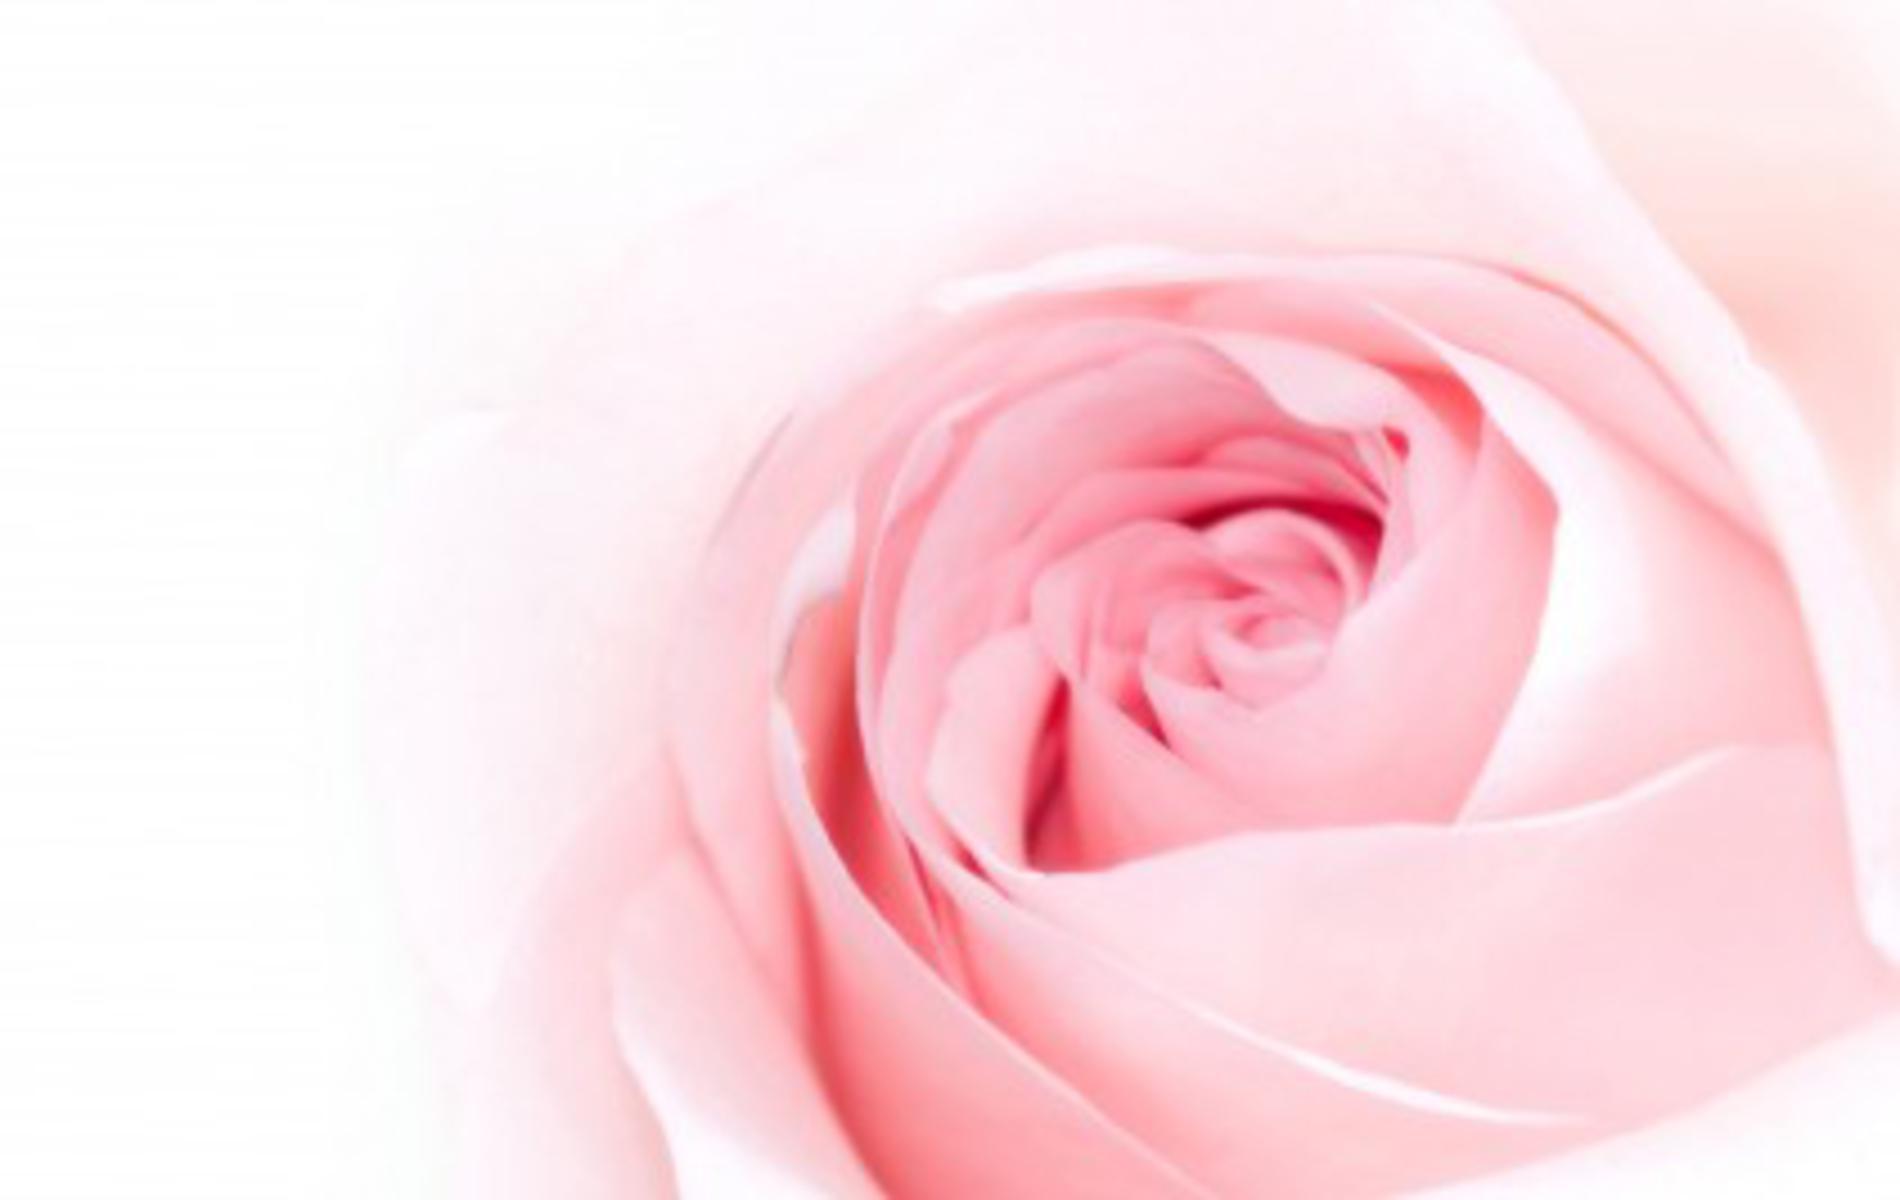 Hình nền hồng hoa hồng mang đến sự ngọt ngào và nữ tính cho màn hình điện thoại của bạn. Với màu hồng tinh tế và họa tiết hoa hồng tuyệt đẹp, hình nền trở nên đáng yêu và quyến rũ hơn bao giờ hết. Hãy trải nghiệm một không gian trang trí độc đáo với hình nền hồng hoa hồng!